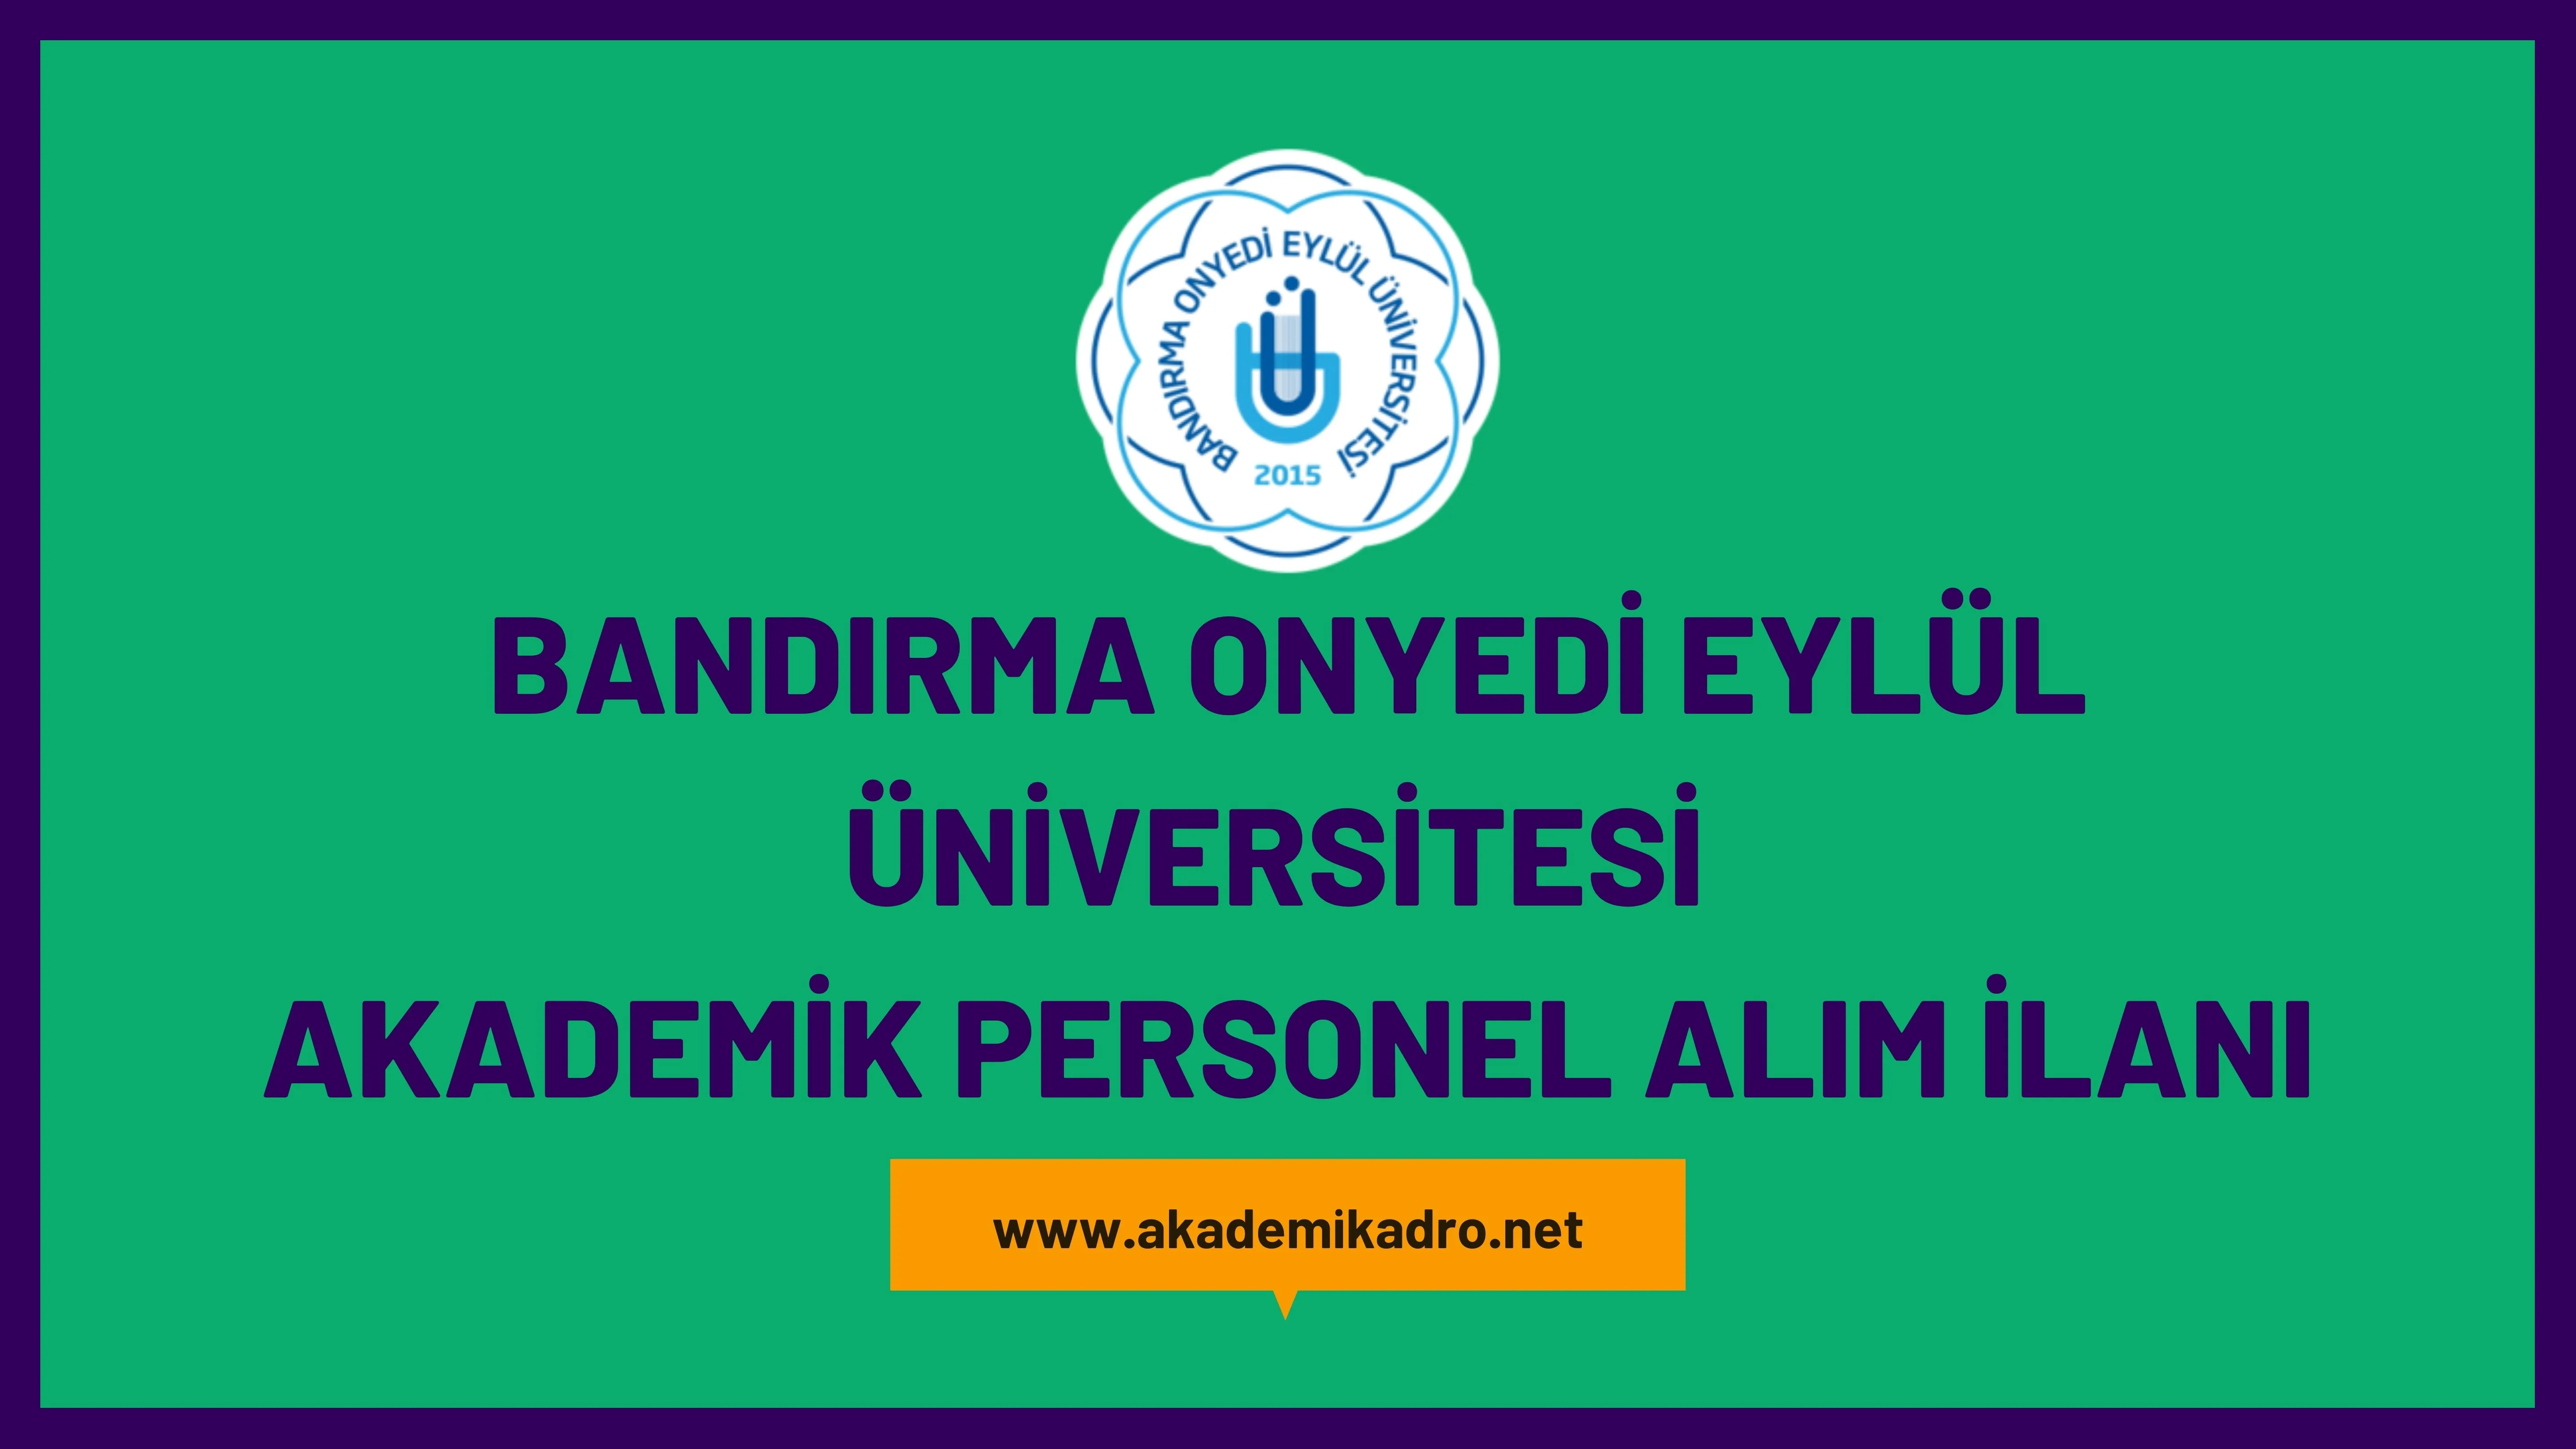 Bandırma Onyedi Eylül Üniversitesi birçok alandan 19 Öğretim üyesi alacak. Son başvuru tarihi 03 Temmuz 2023.